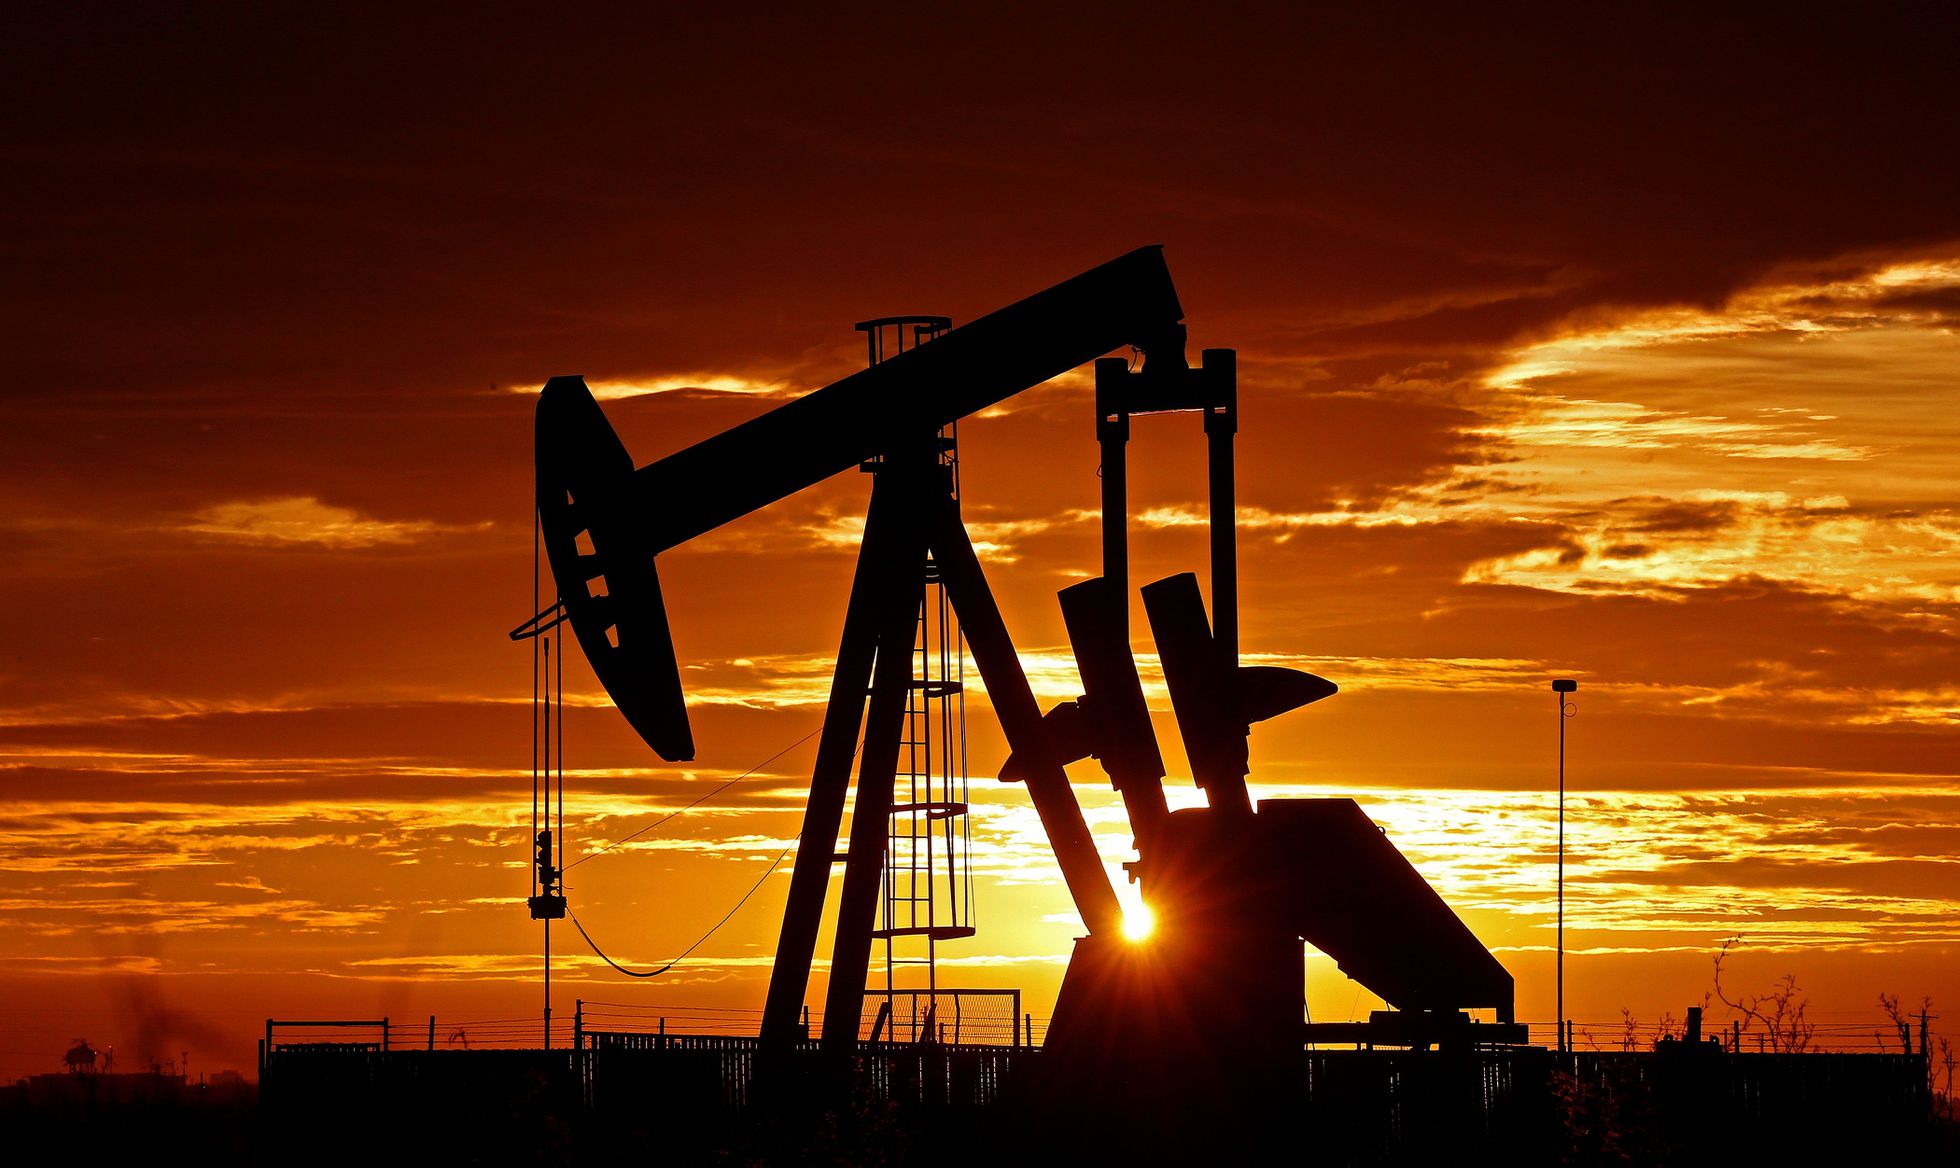 El petróleo de EE UU cotiza en negativo tras el mayor hundimiento de su historia | Economía | EL PAÍS